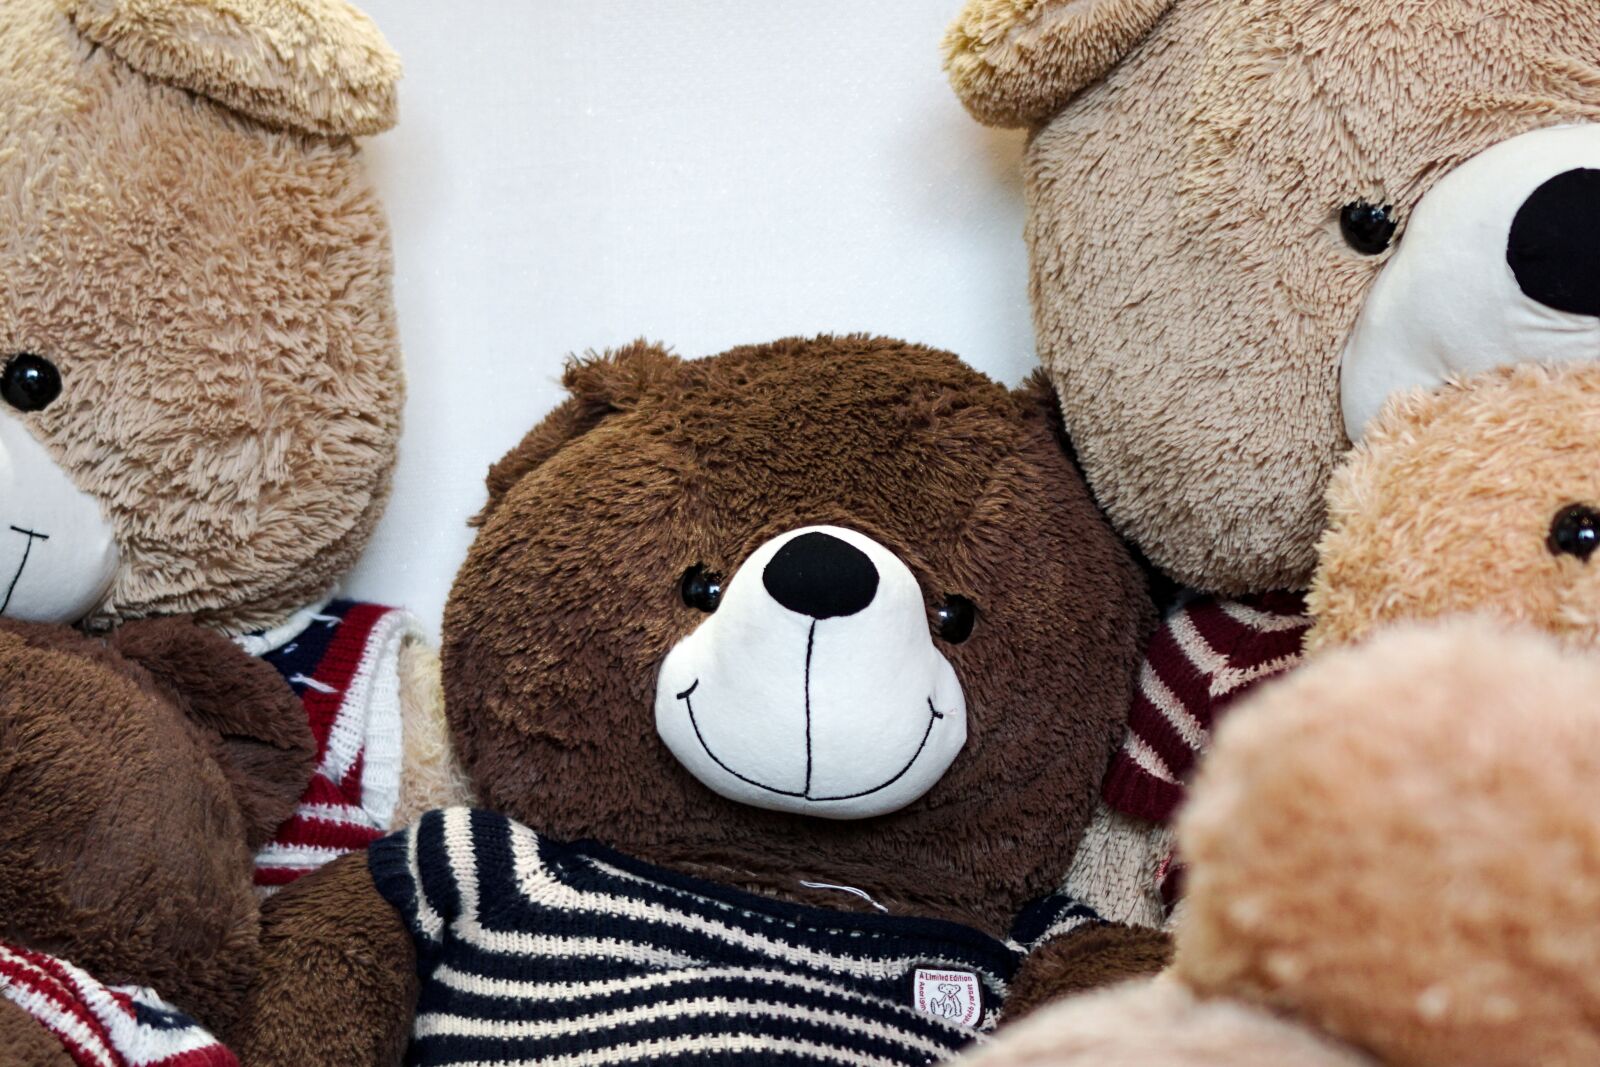 Sony a6000 sample photo. Teddy bear, doll, toy photography